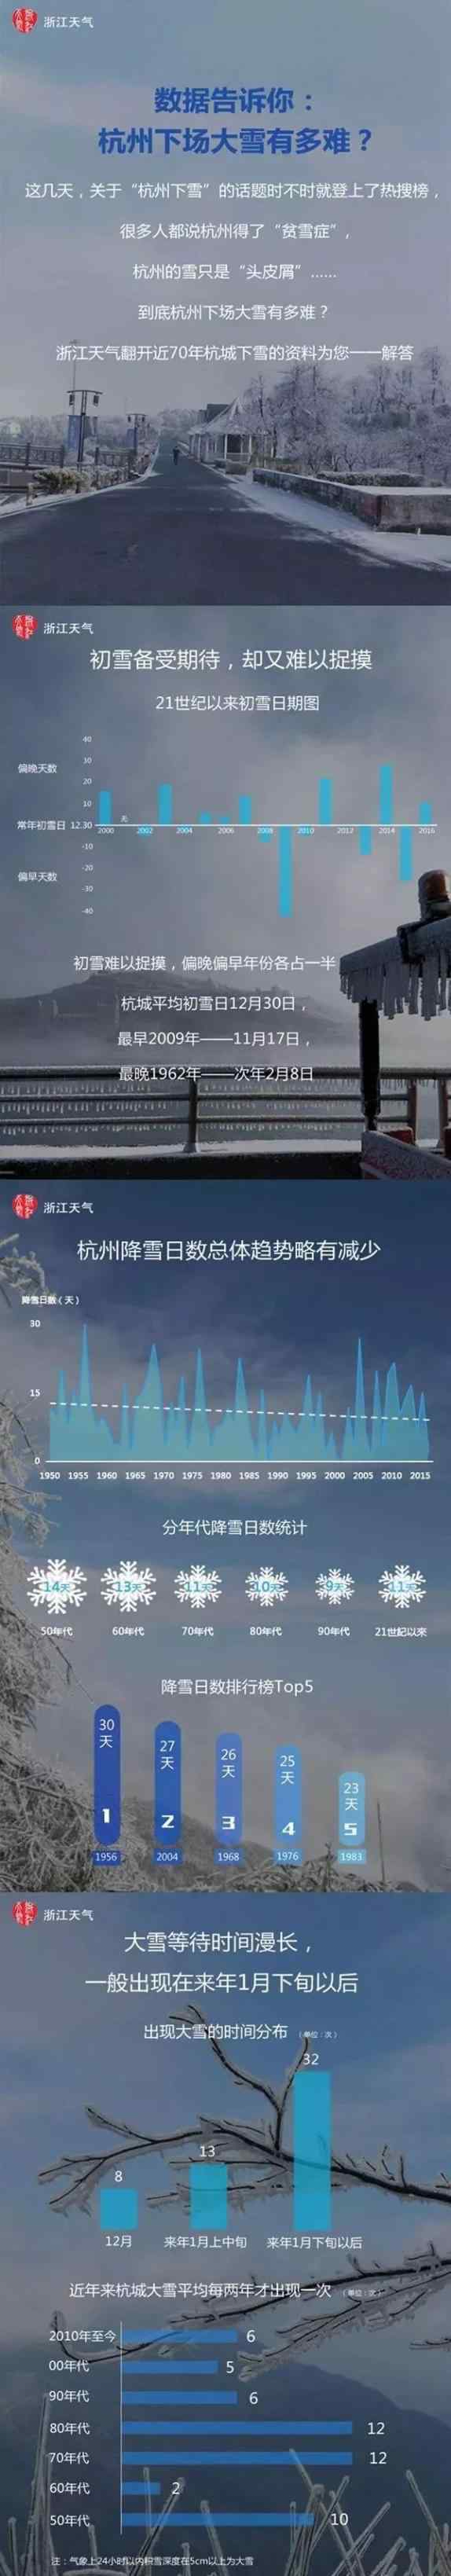 杭州大雪 今早最低1.4℃，“大雪”过后要升温，下周最高19℃！